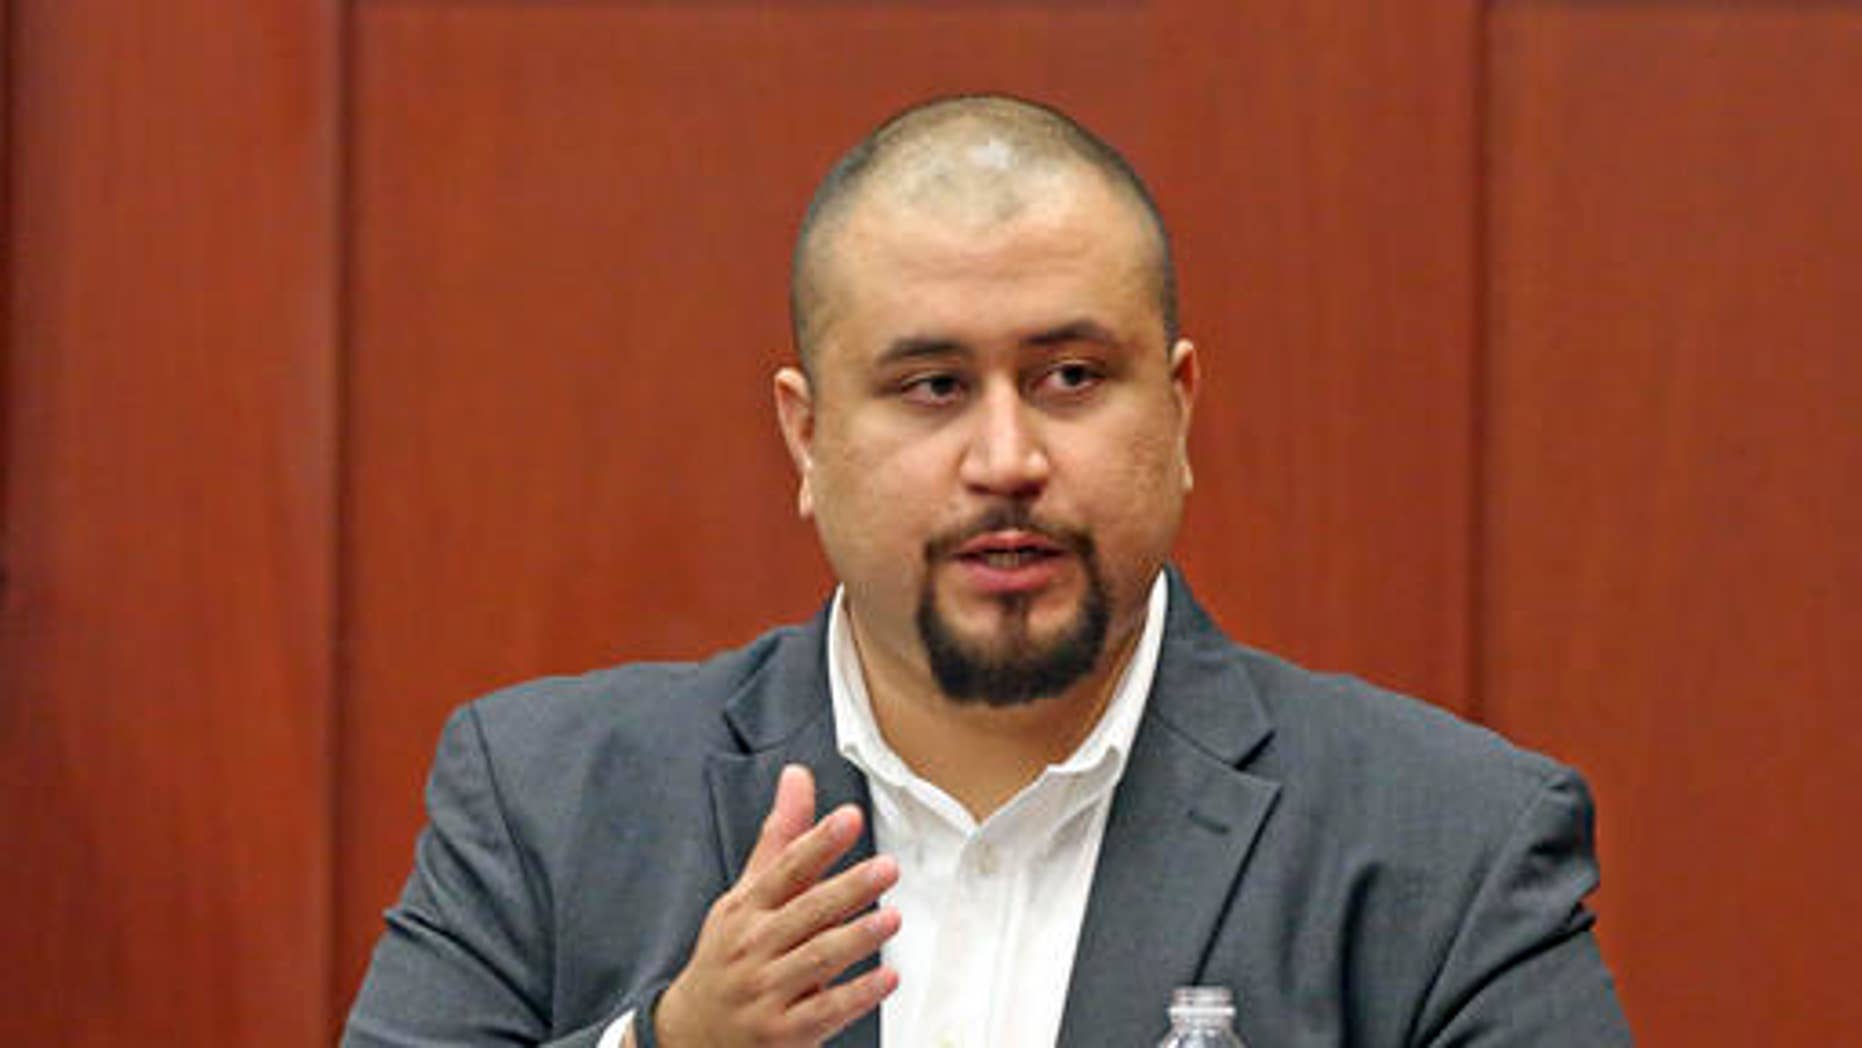 George Zimmerman Accused Of Using Racial Slur Asked To Leave Florida 9237